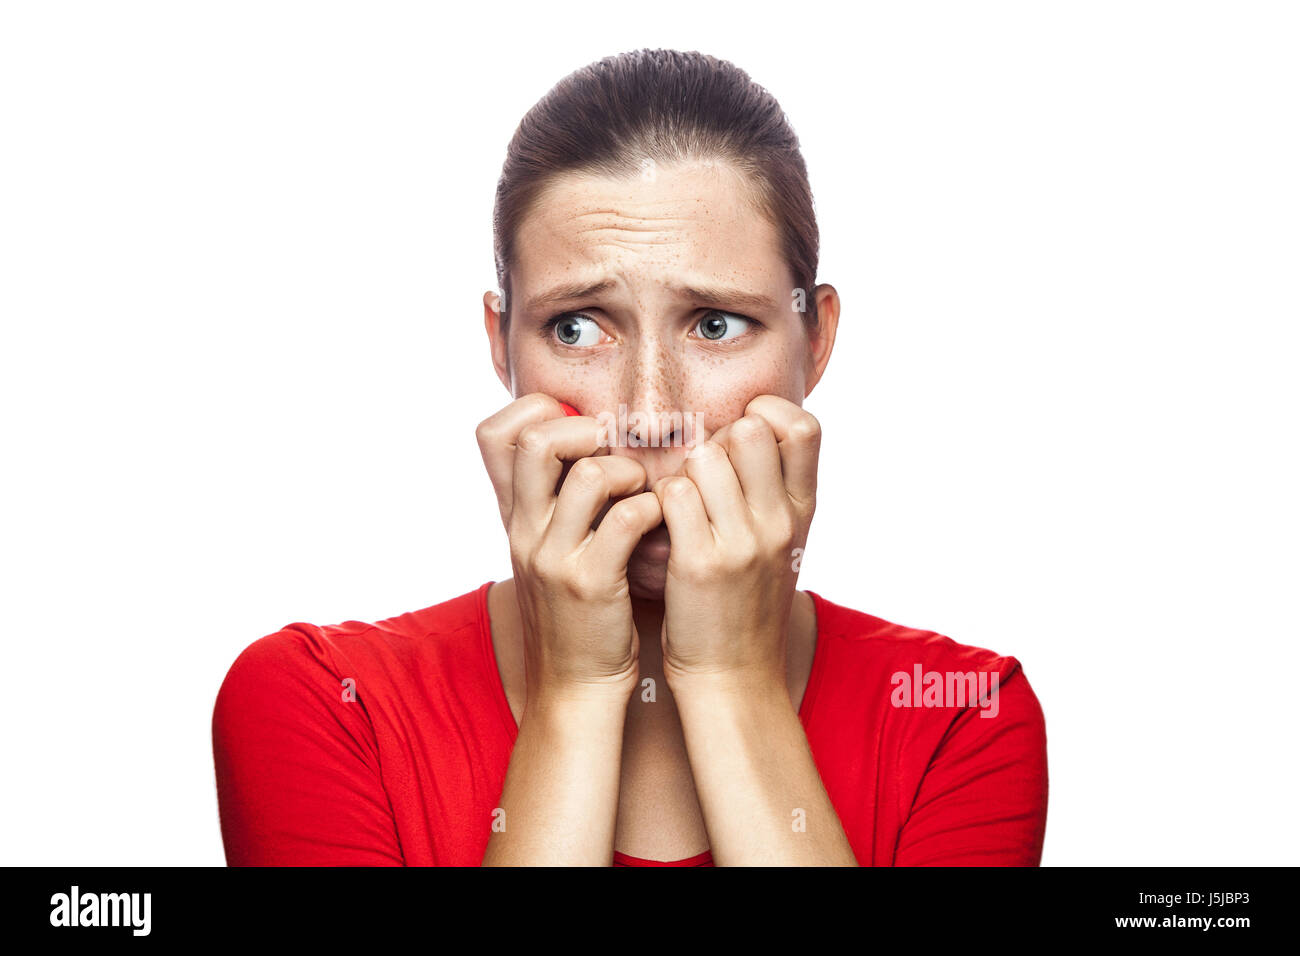 Ritratto di preoccupato scared woman in red t-shirt con lentiggini. guardando la telecamera, studio shot. isolato su sfondo bianco. Foto Stock